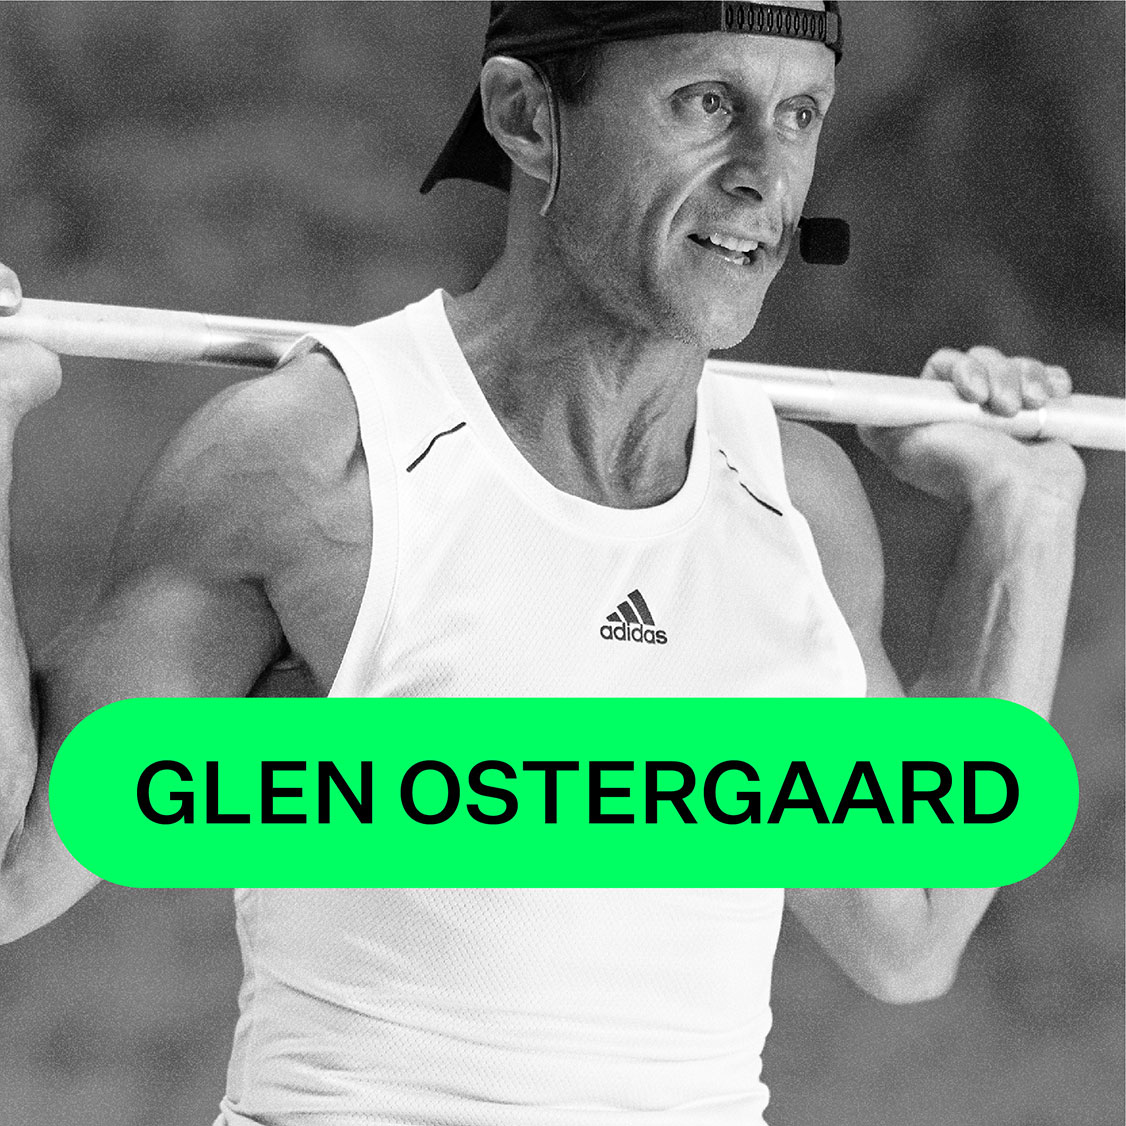 Glen Ostergaard